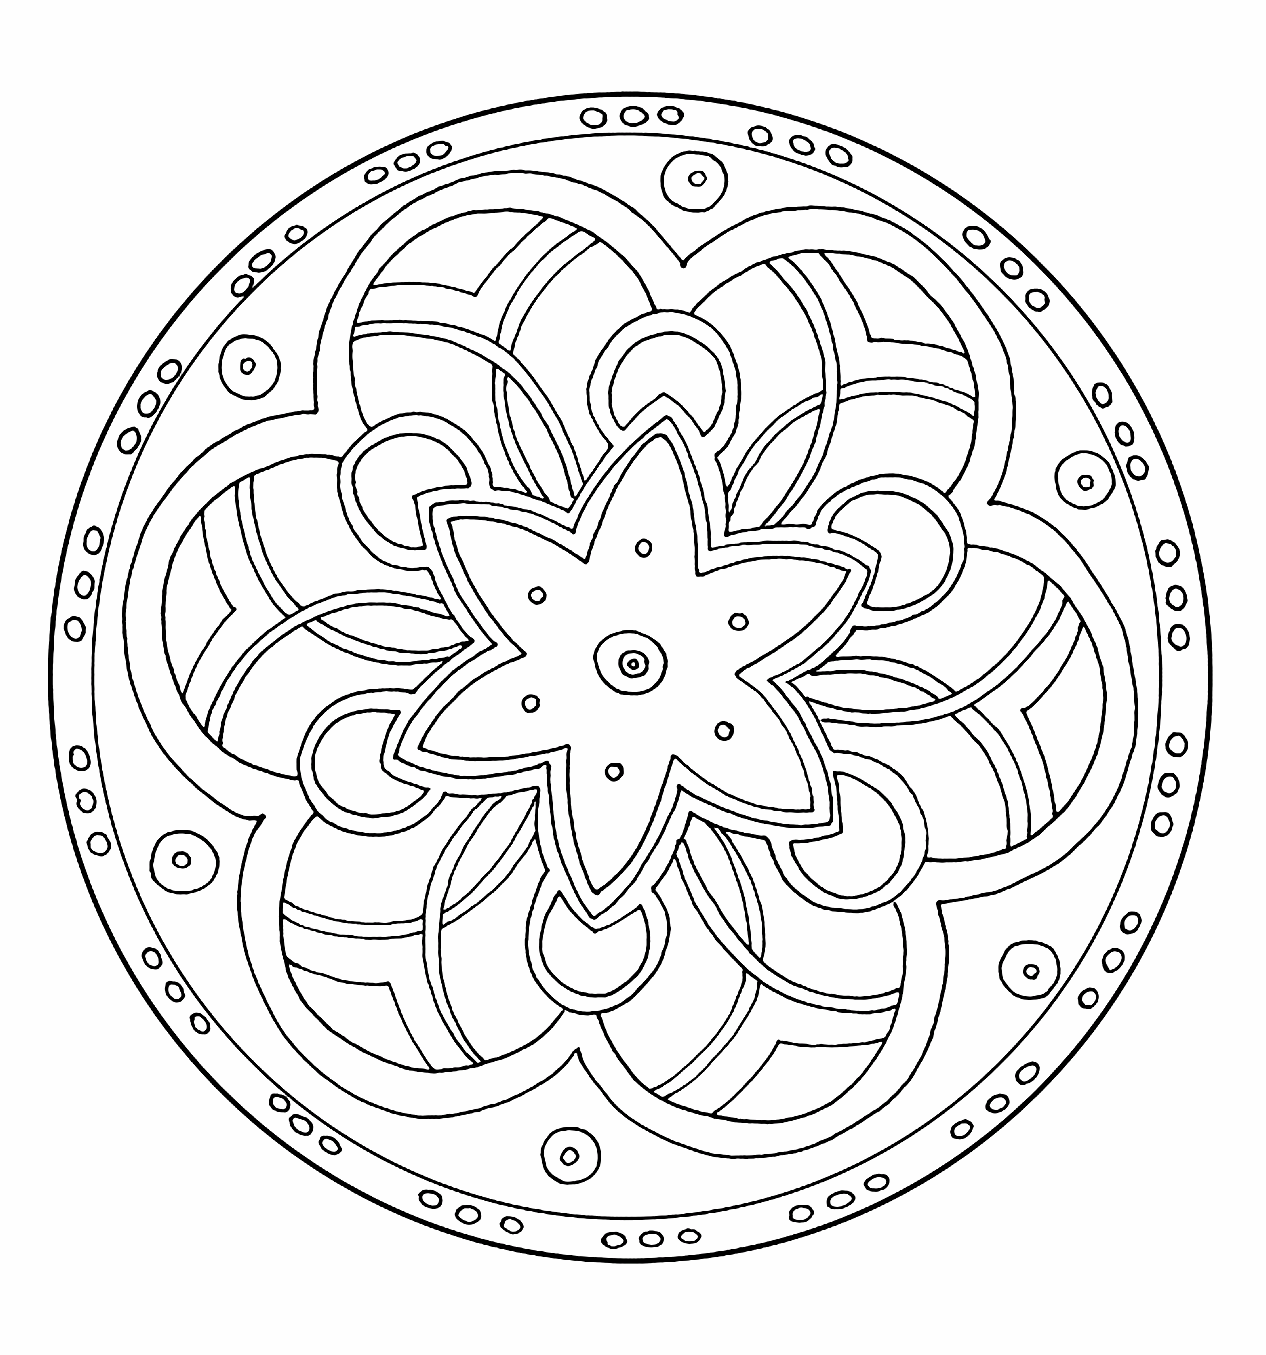 Mandala à colorier avec spirales et une magnifique étoile au milieu.